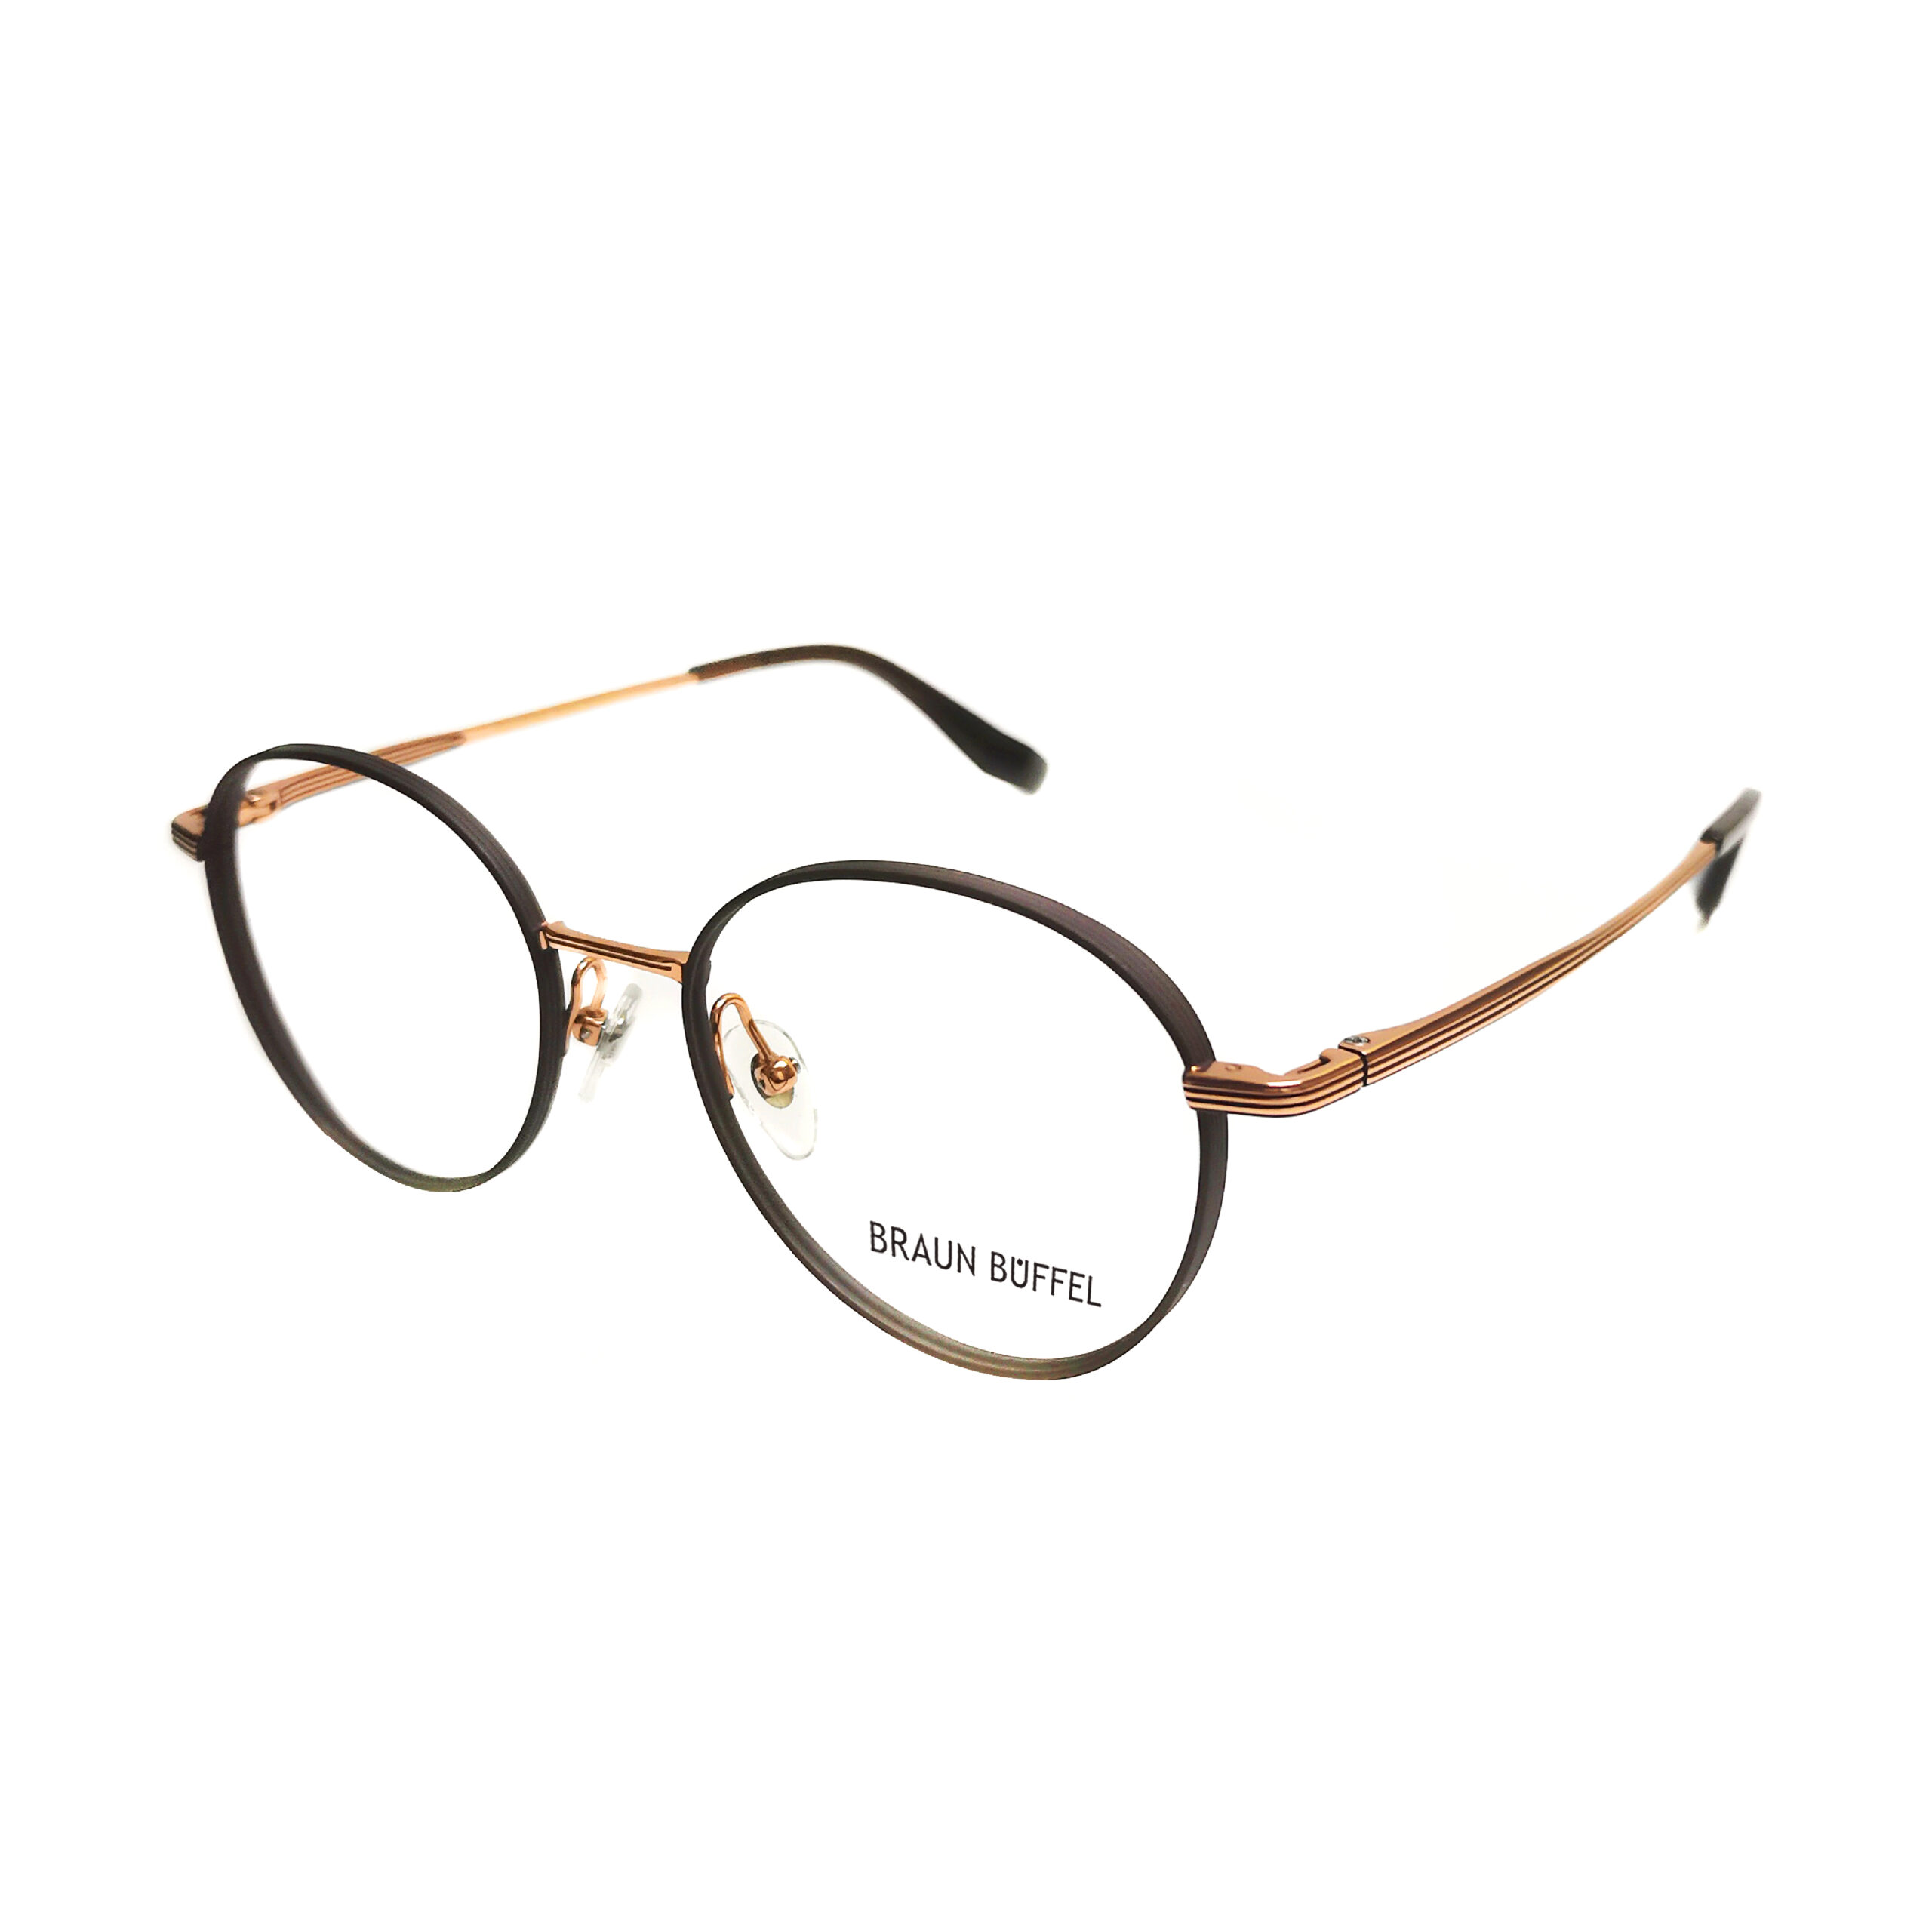 Braun Buffel BB 50002 – C4 – MOG Eyewear – Metro Optical Group